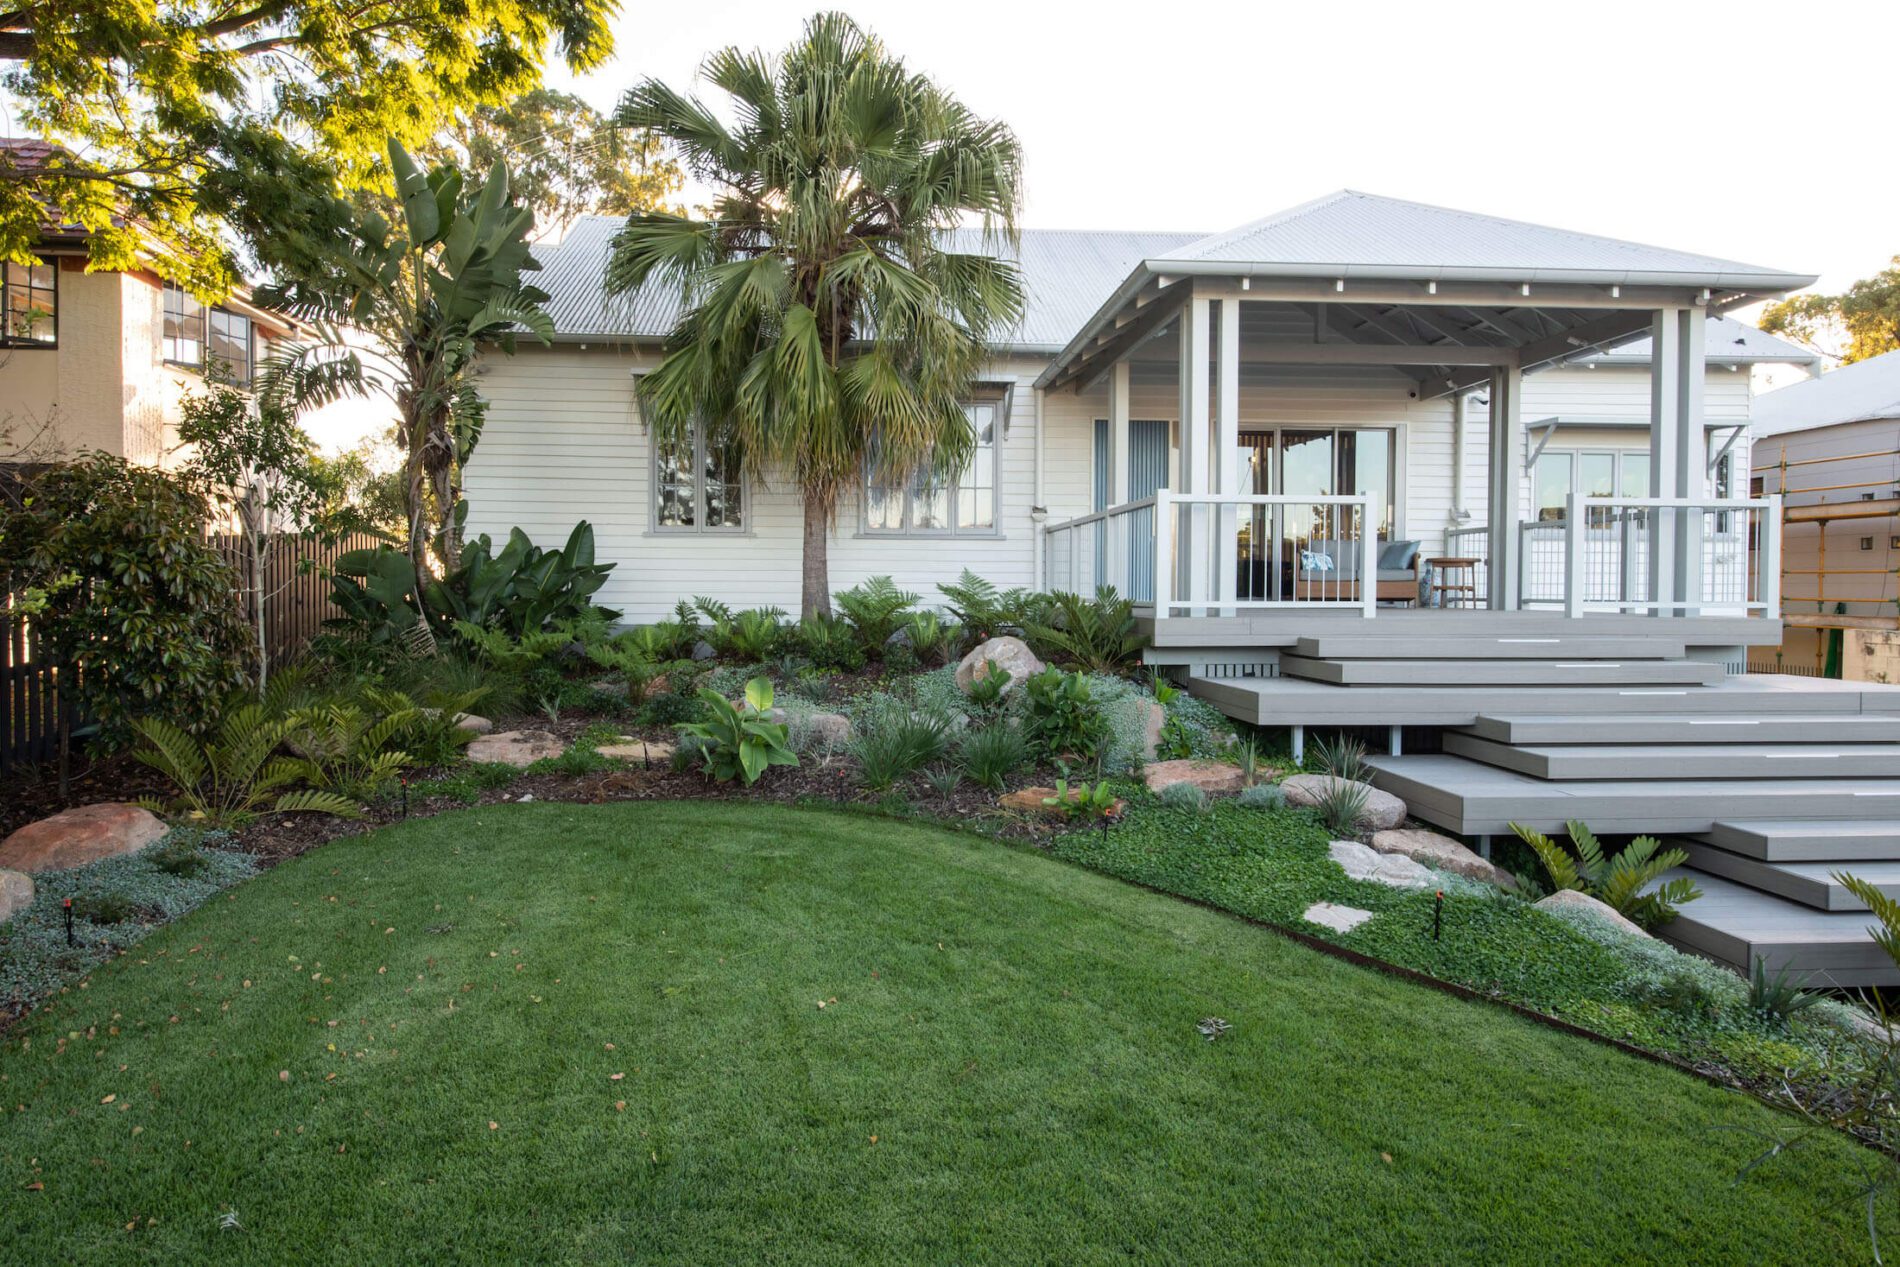 Queenslander home with lush garden